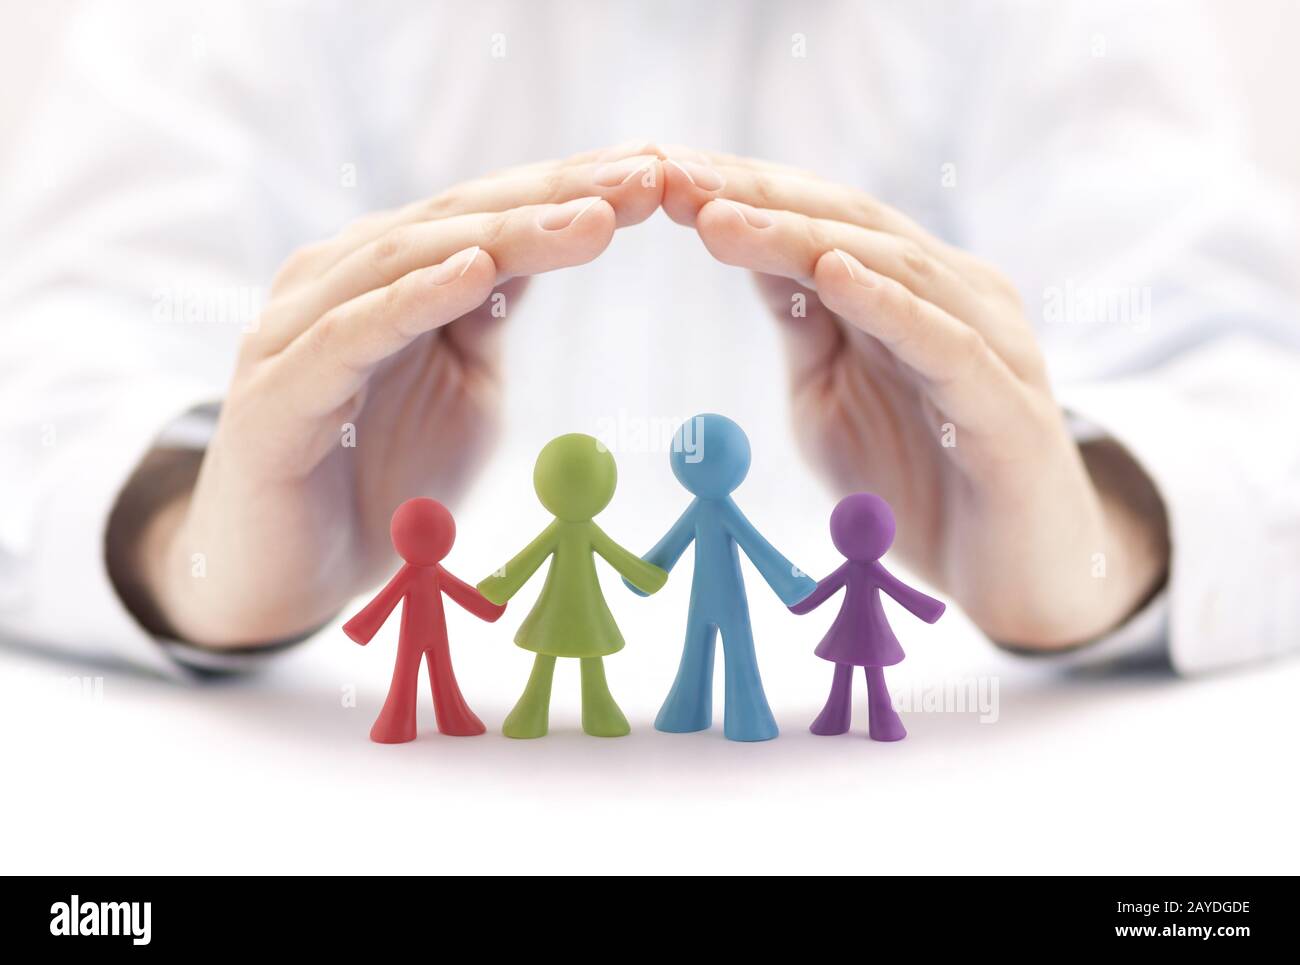 Concepto de seguro familiar con coloridas figuras familiares cubiertas de manos Foto de stock